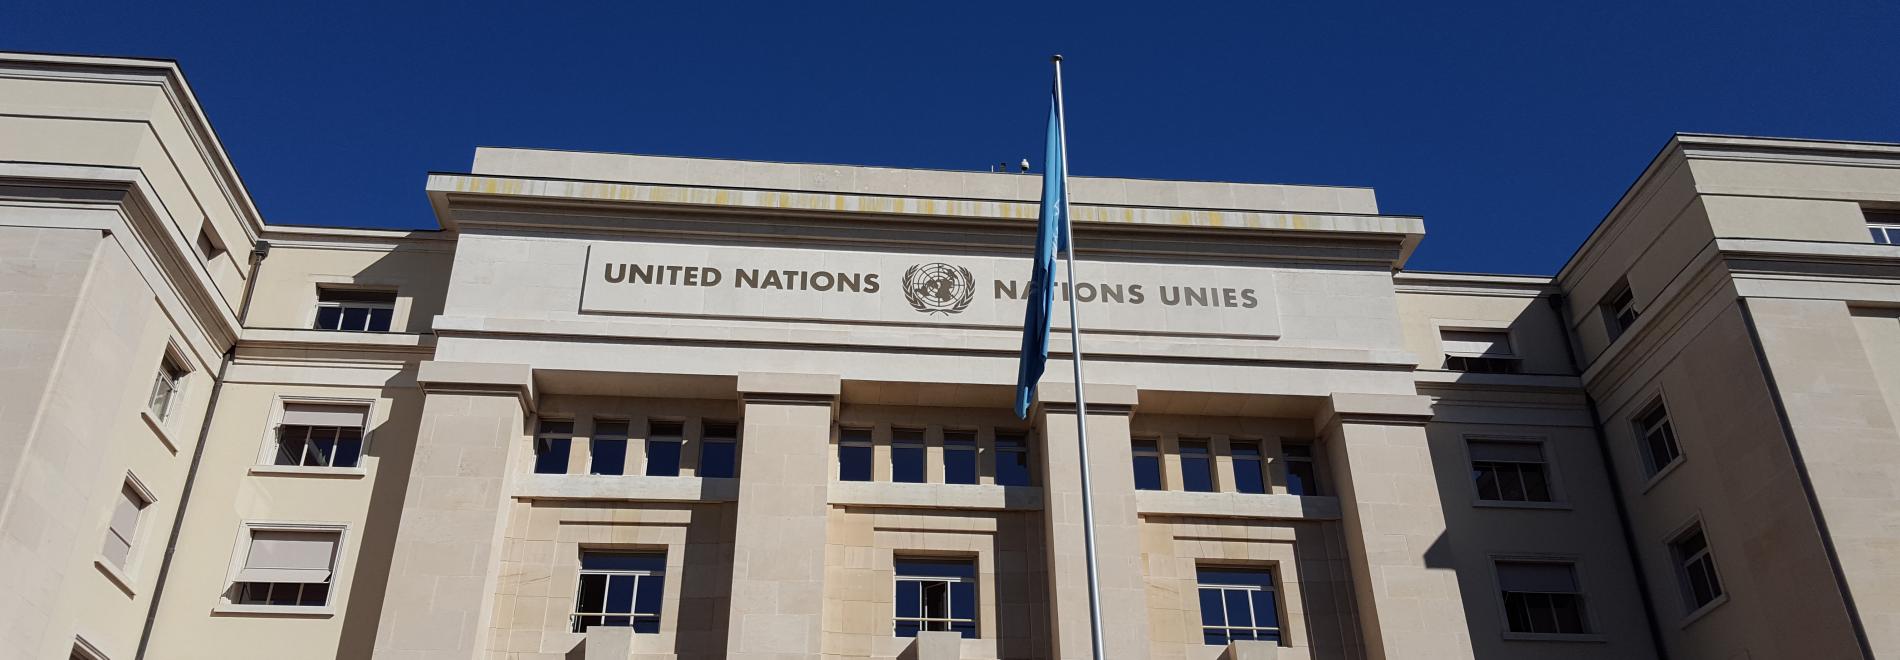 Der UN-Ausschuss für wirtschaftliche, soziale und kulturelle Rechte in Genf überwacht die Einhaltung des Internationalen Paktes über wirtschaftliche, soziale und kulturelle Rechte. Foto: Ärzte der Welt